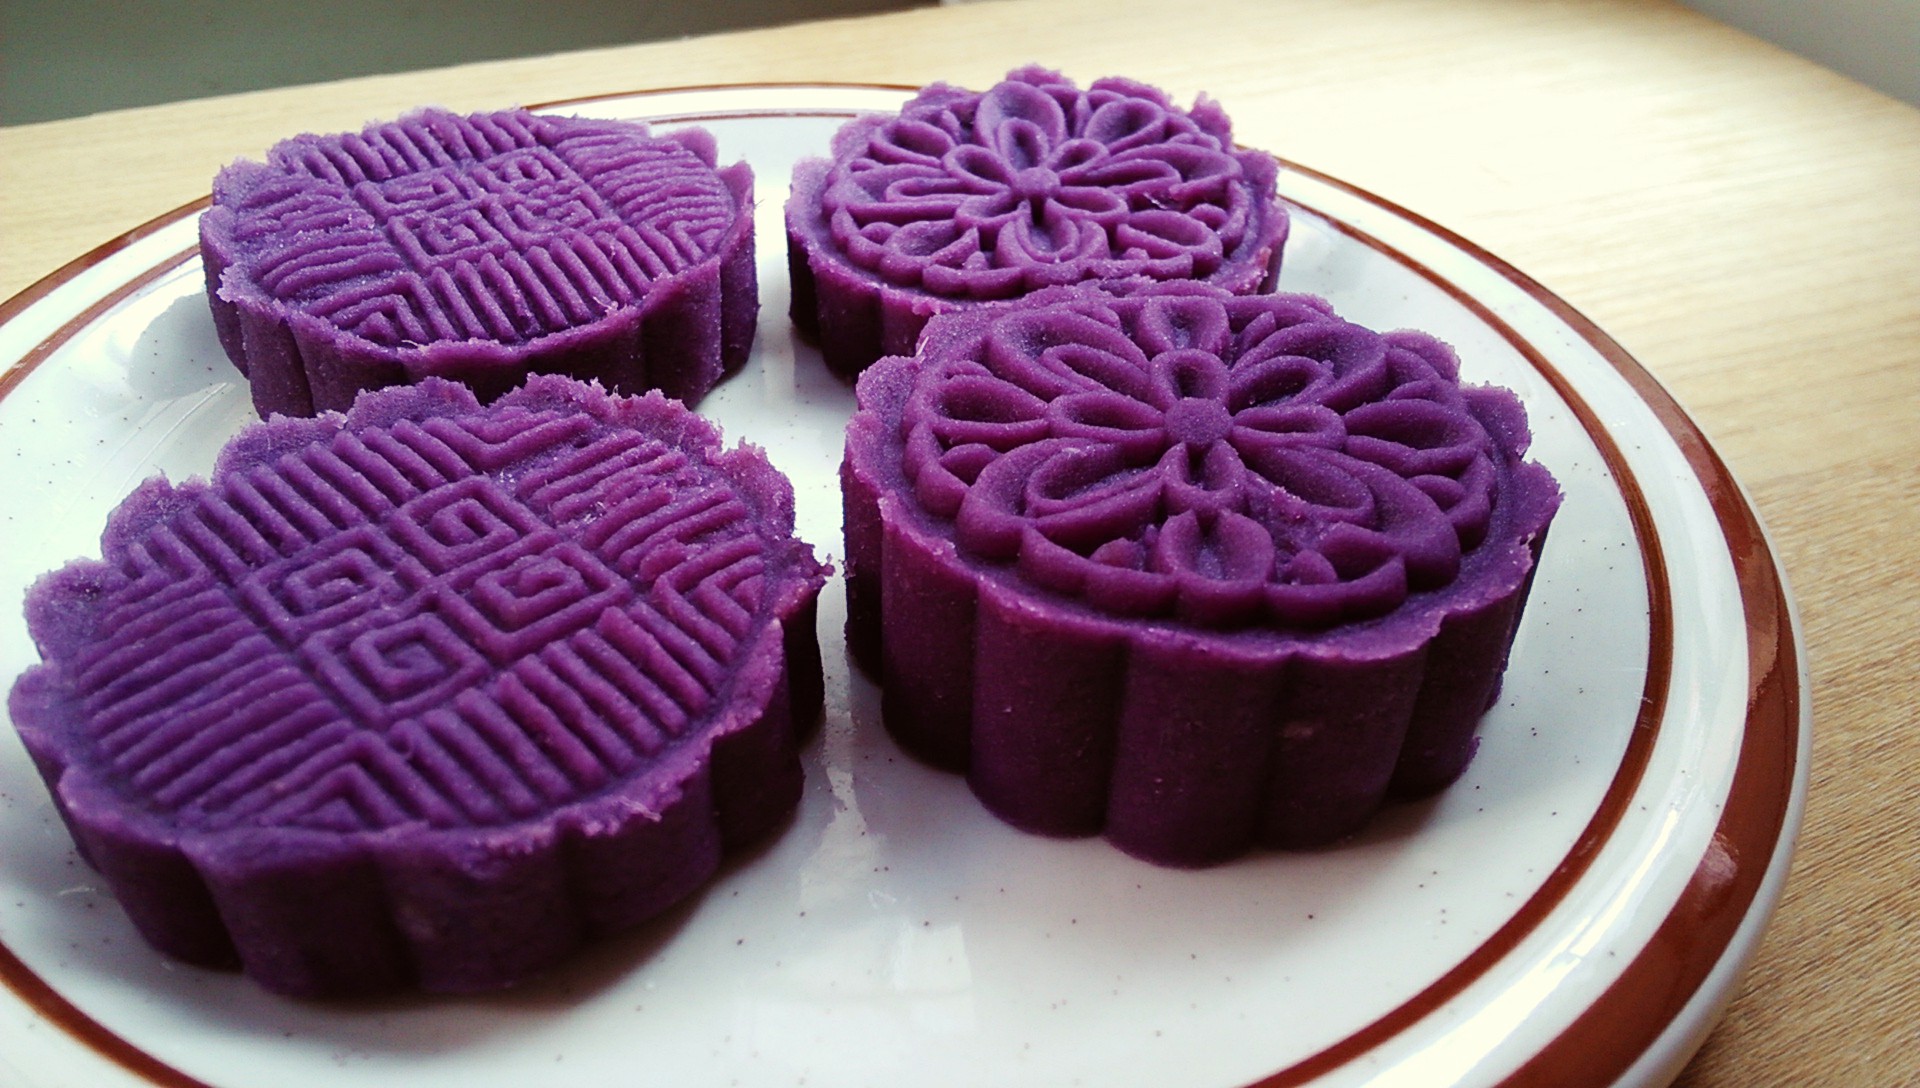 美食达人教你如何做紫薯糯米糕, 好看好吃做法还简单视频